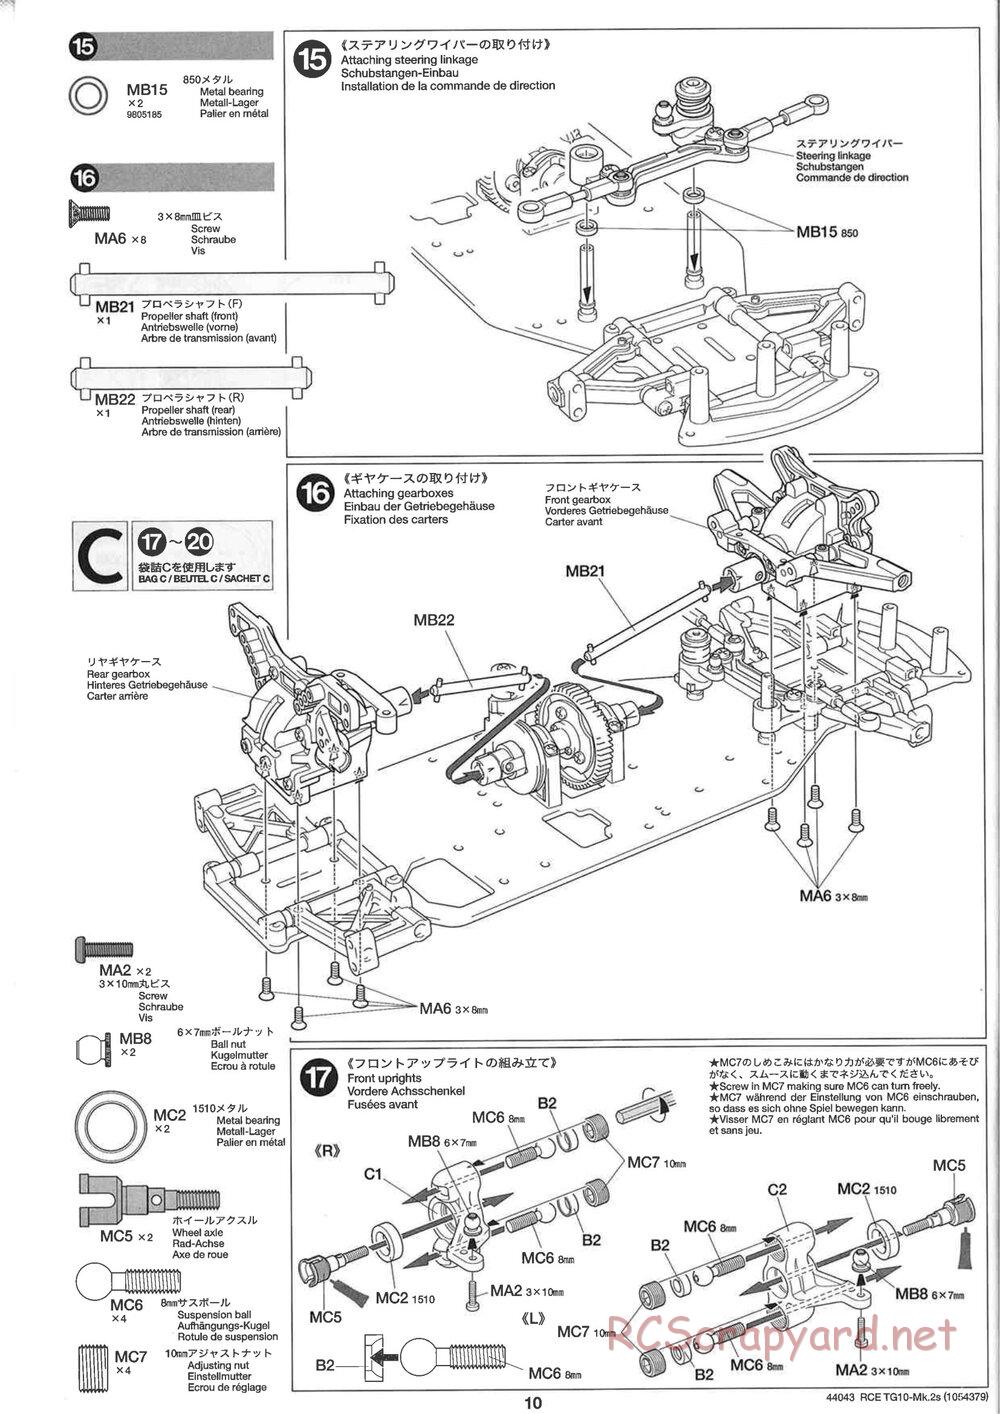 Tamiya - TG10 Mk.2s Chassis - Manual - Page 11